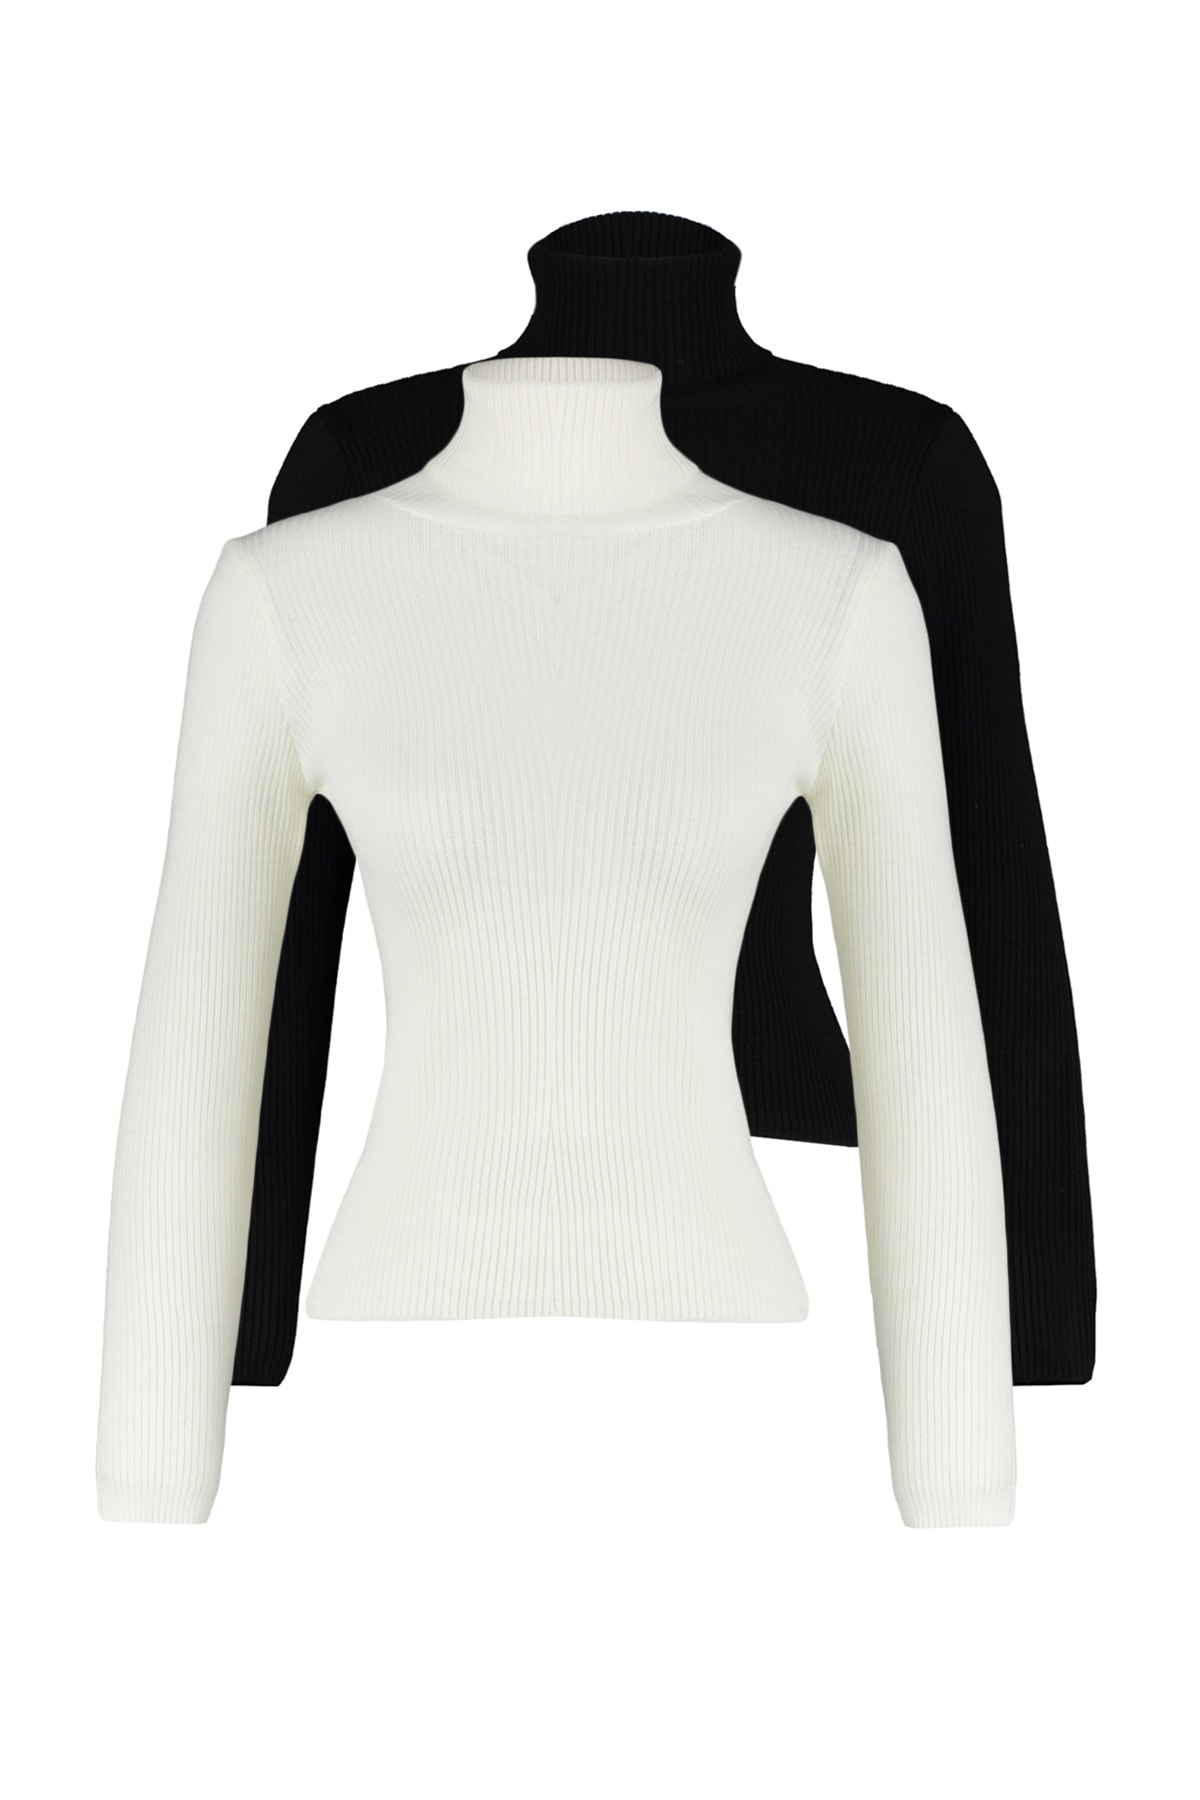 Trendyol Black-White Double Pack Knitwear Sweater